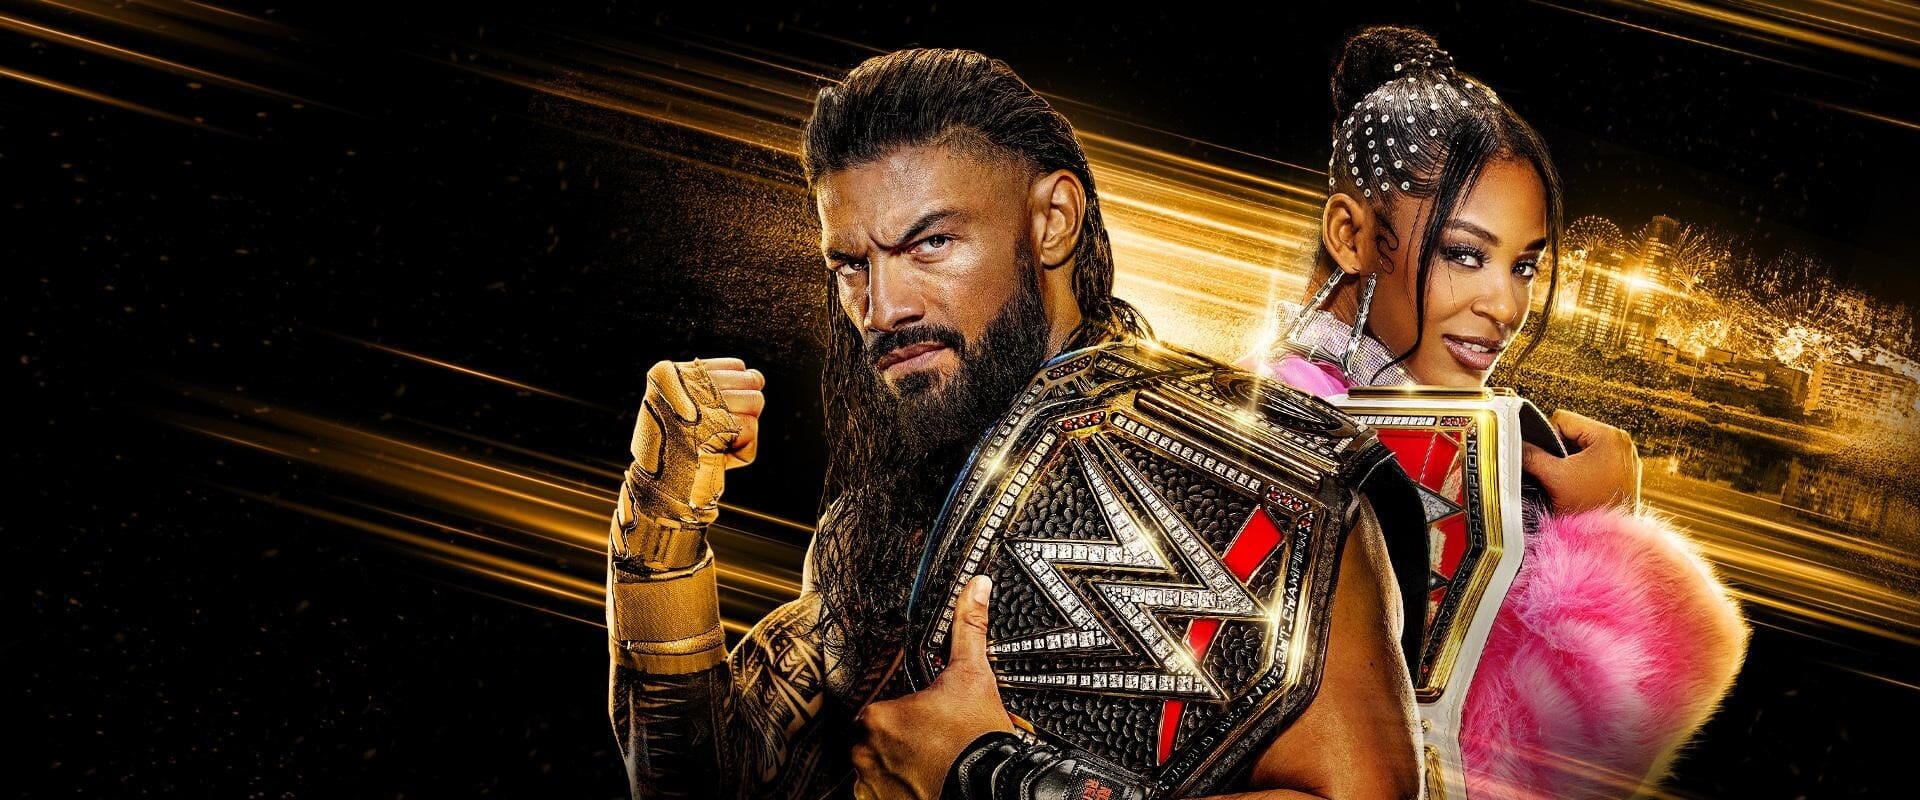 رویداد WWE Night of Champions 2023 | شب قهرمانان